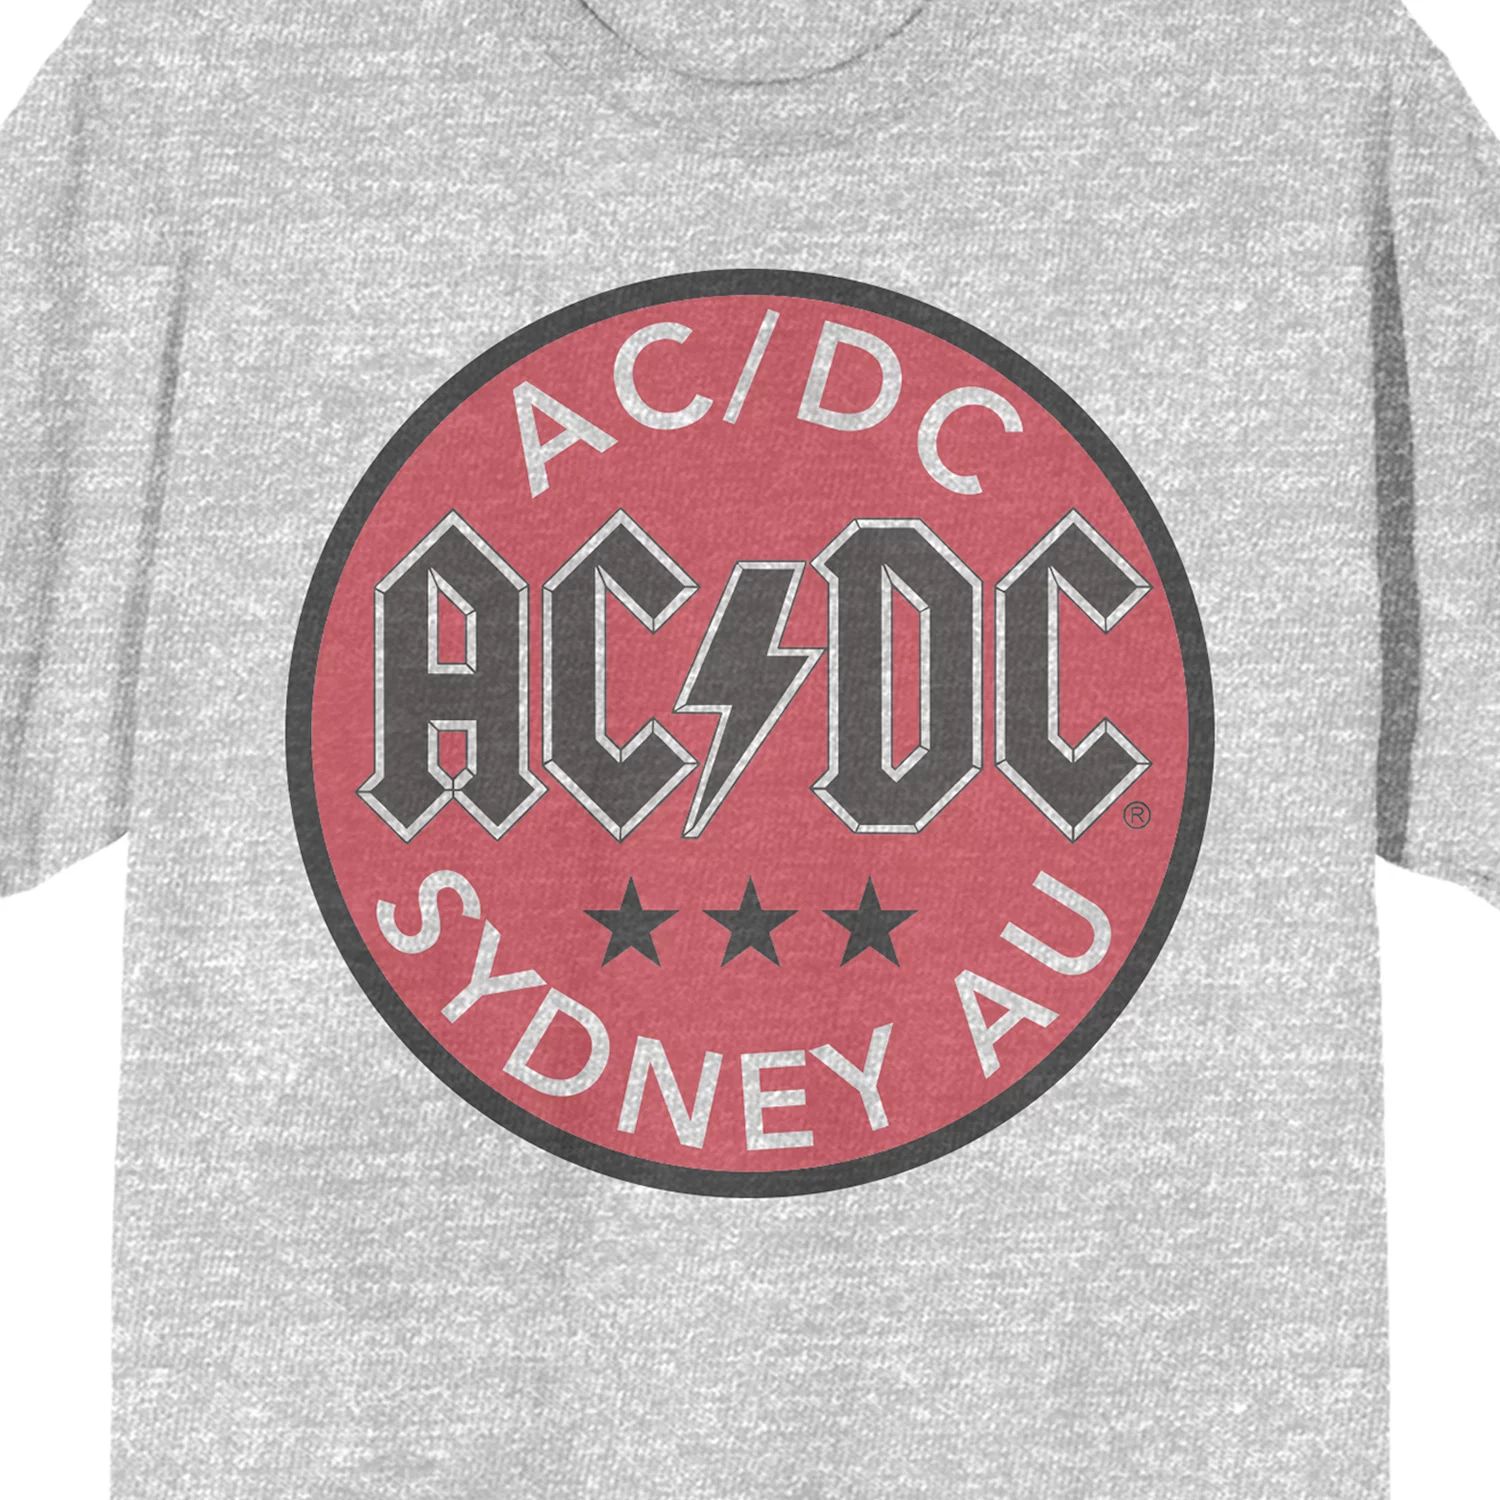 Мужская футболка с логотипом AC/DC Licensed Character